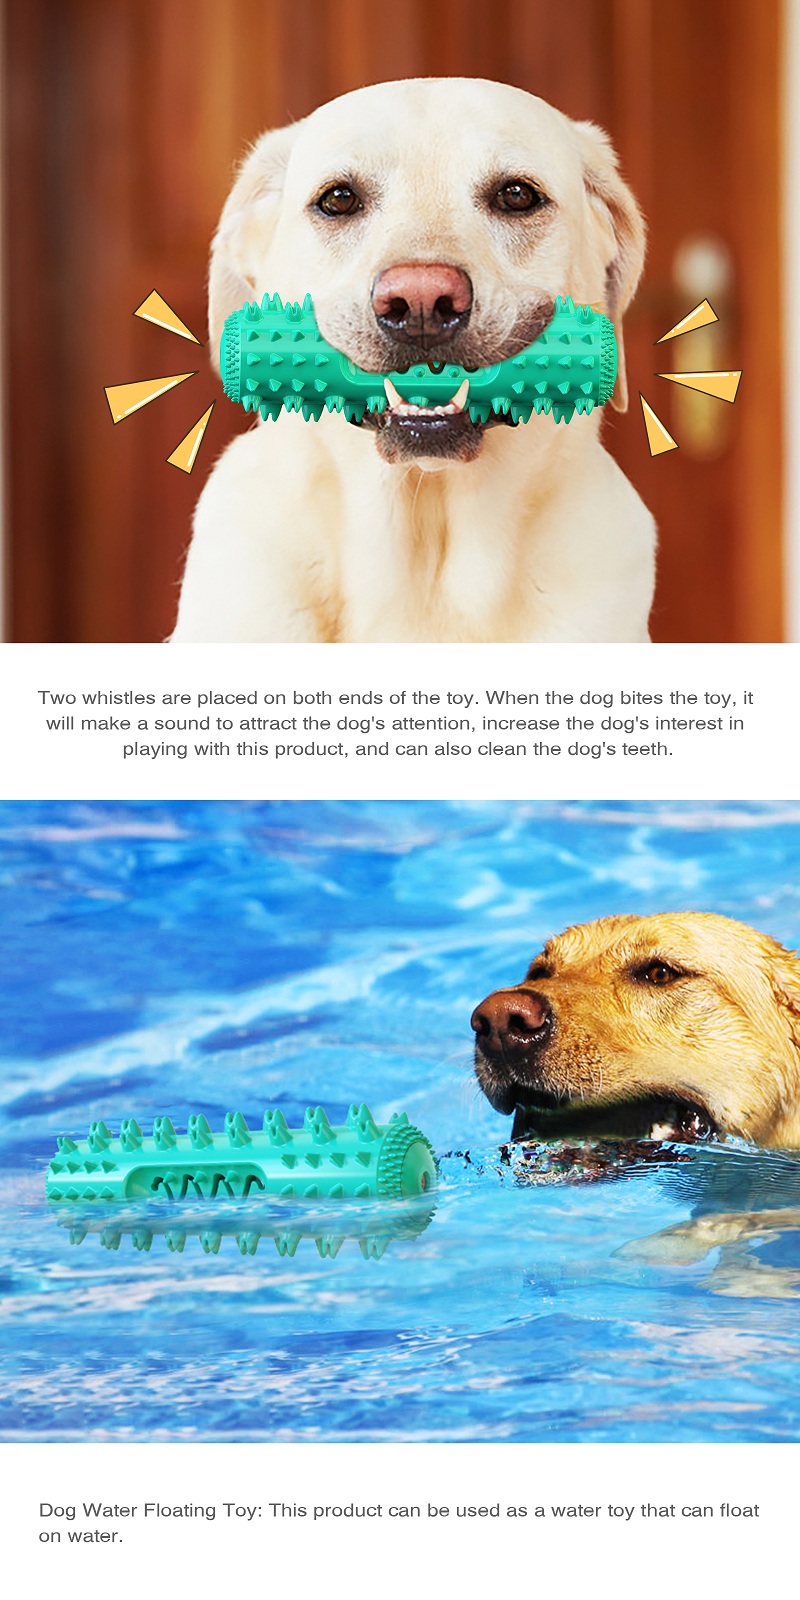 Amazon Bestseller TPR Zahnreinigung Gezahnte Molarenstange Hundezahnbürste Chew Quietschendes Haustier Hundespielzeug